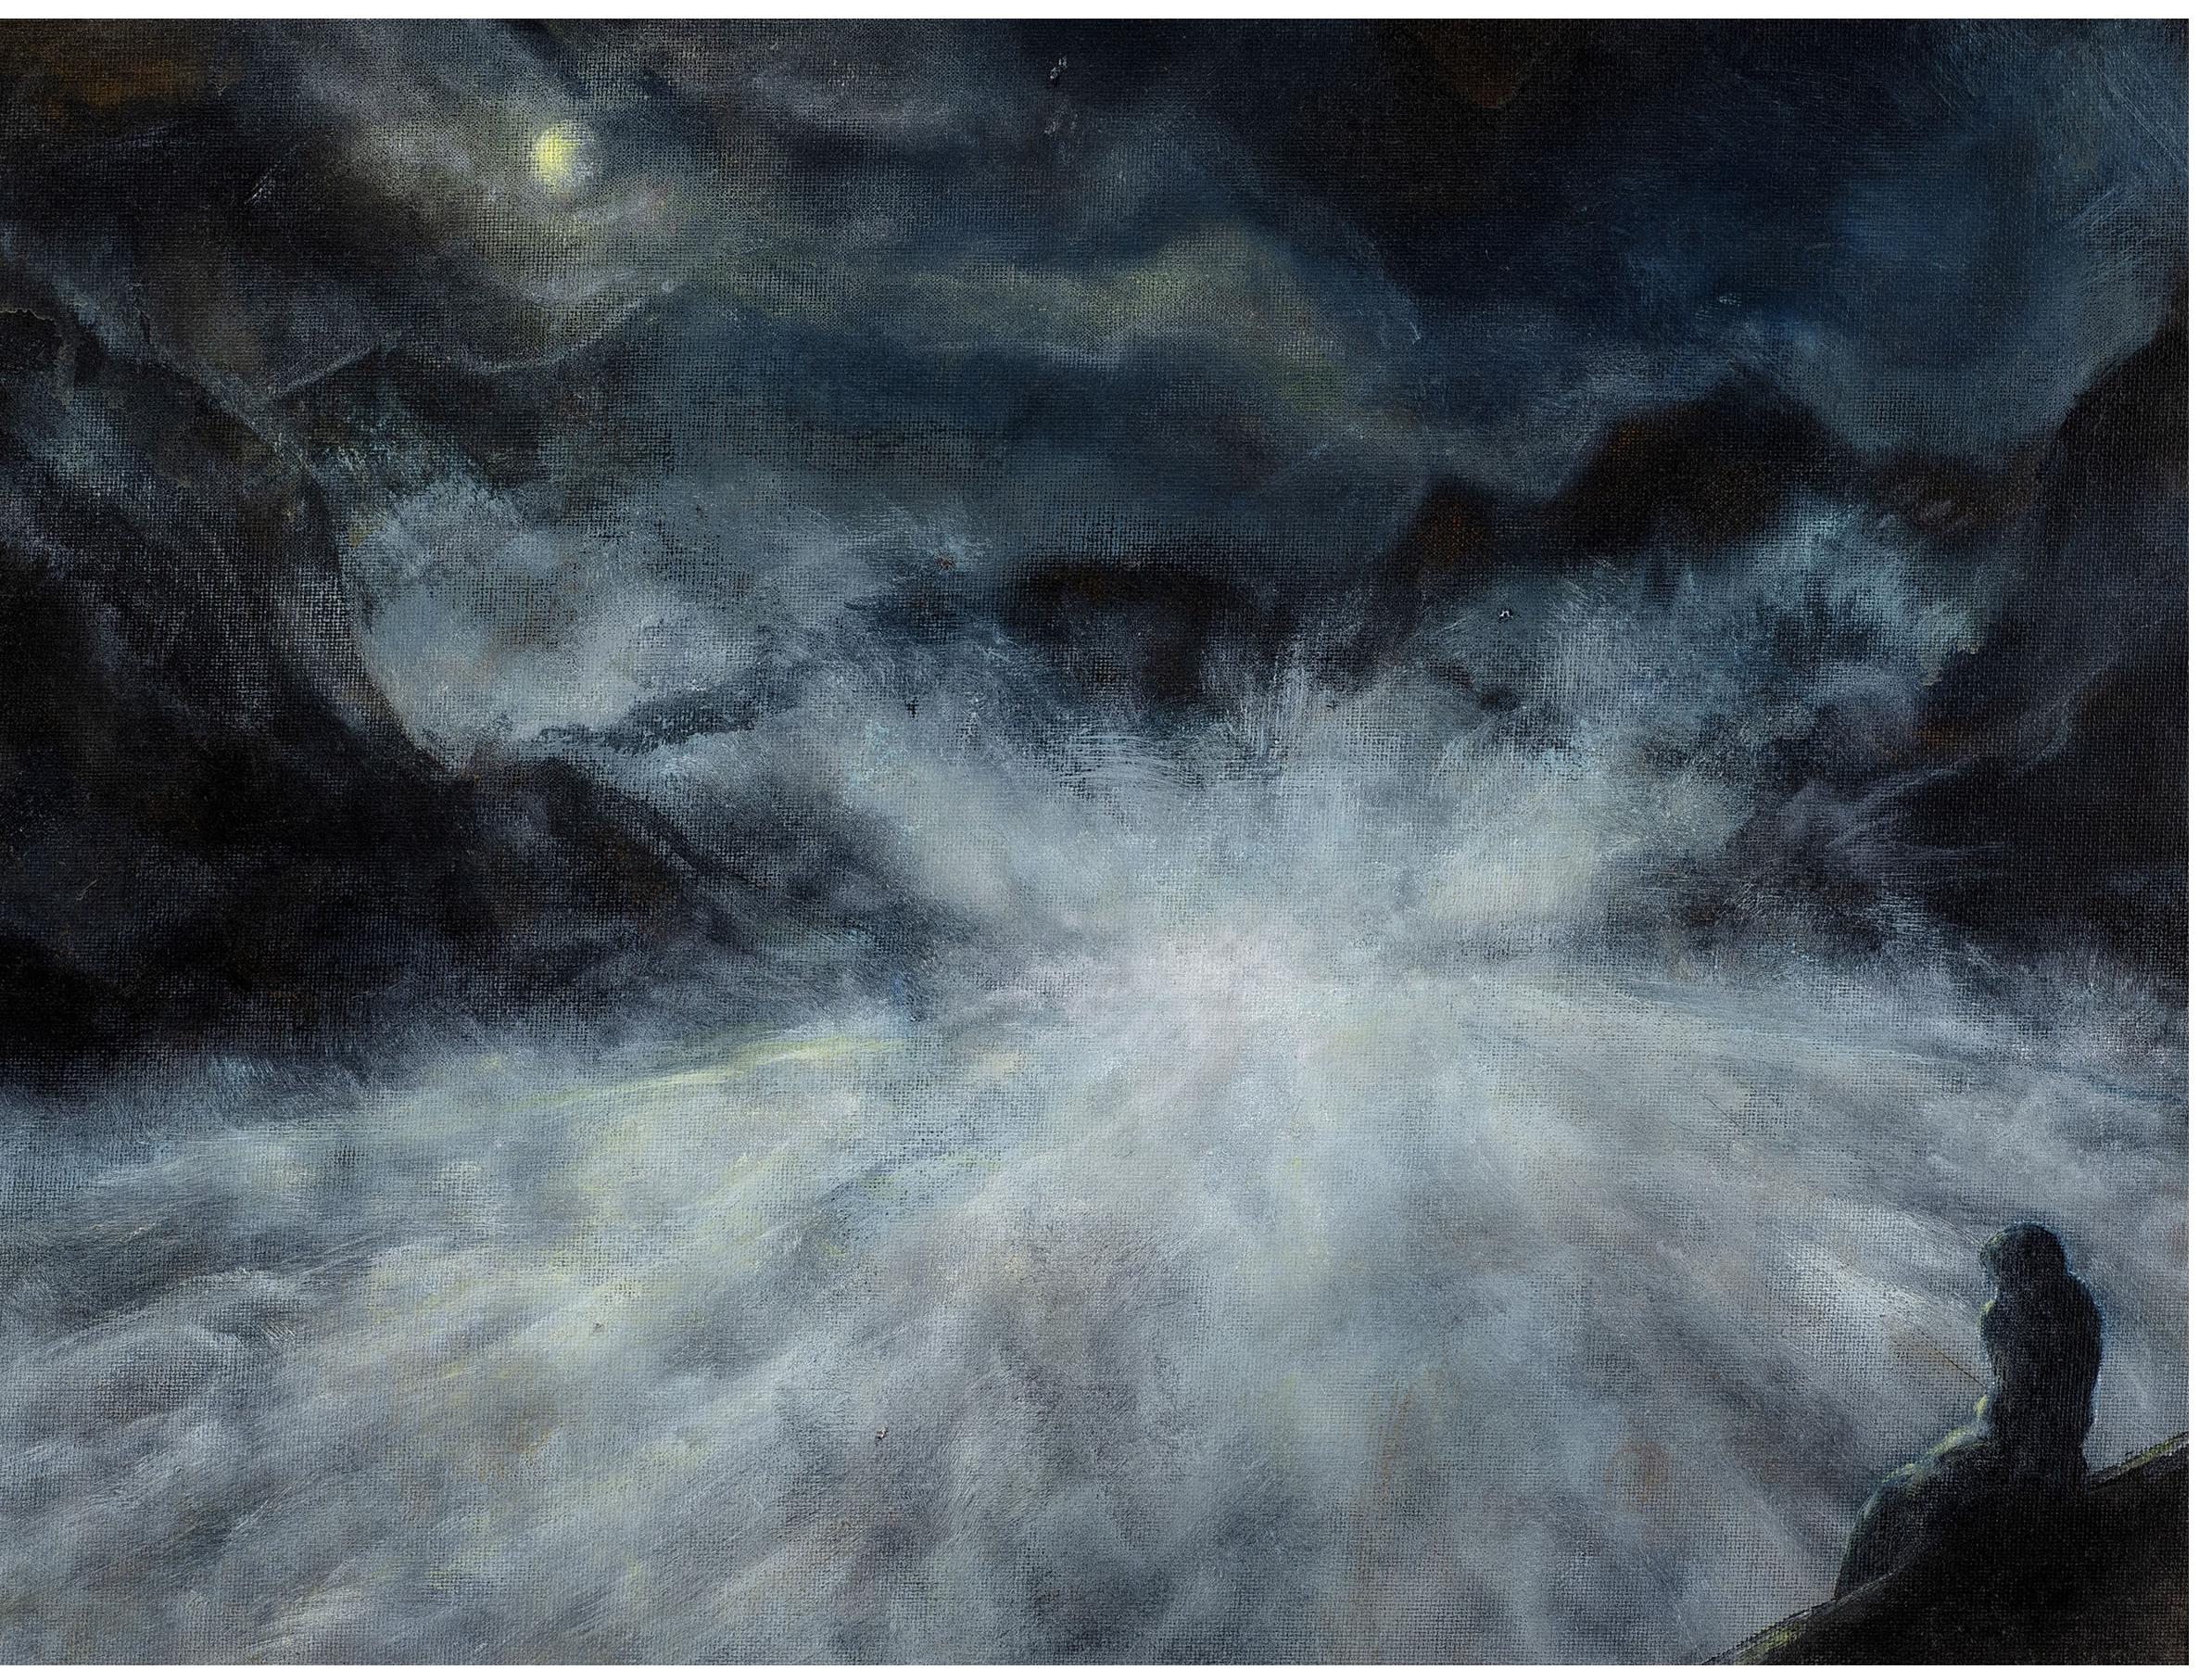 Matthew Bateson - "Deluge", oil on canvas board, 30 x 40 cm